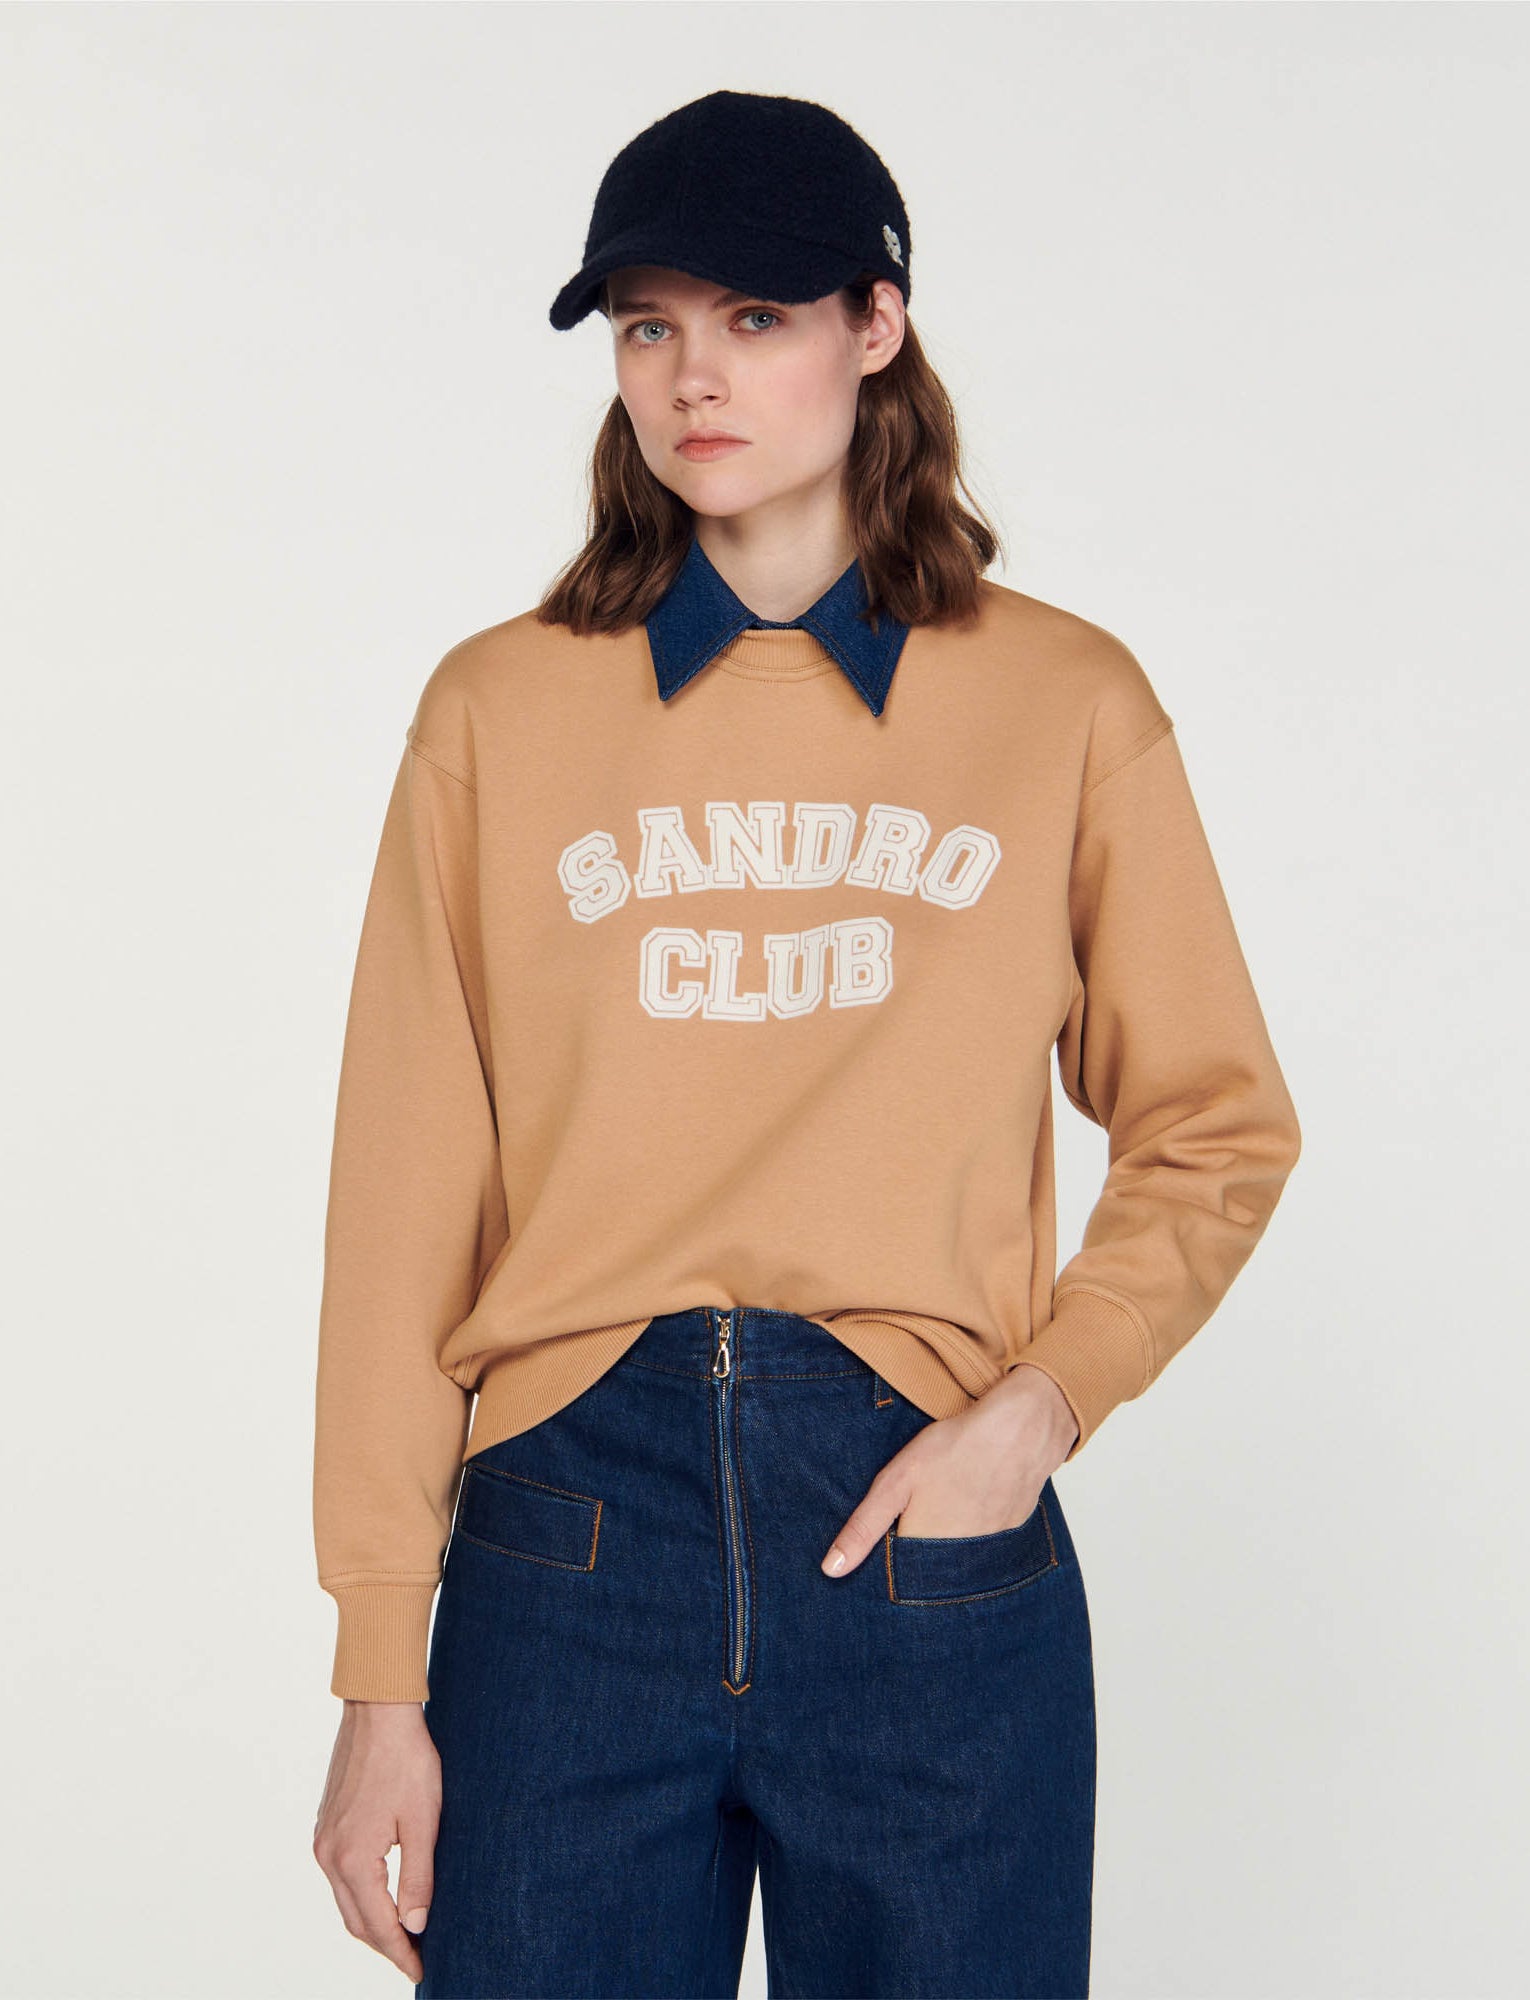 Sudadera Sandro Club